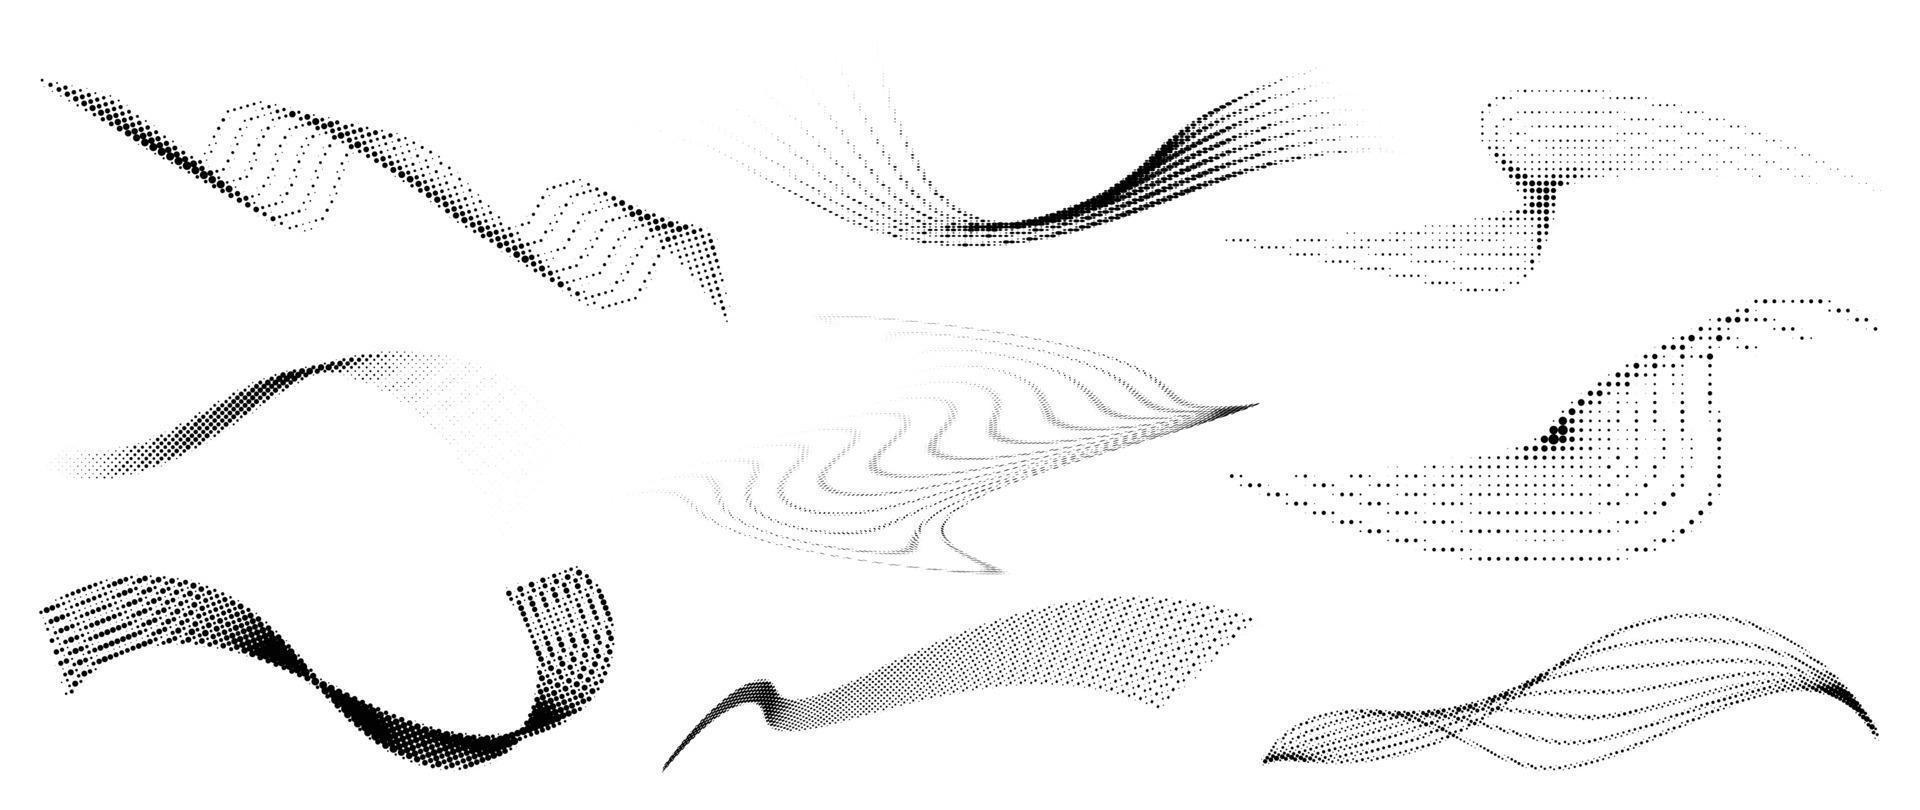 halvton punkt bakgrund mönster vektor illustration. dynamisk Vinka kurva form svartvit lutning prickad textur, blekna bedrövad täcka över. design för affisch, omslag, baner, mock-up, klistermärke, layout.